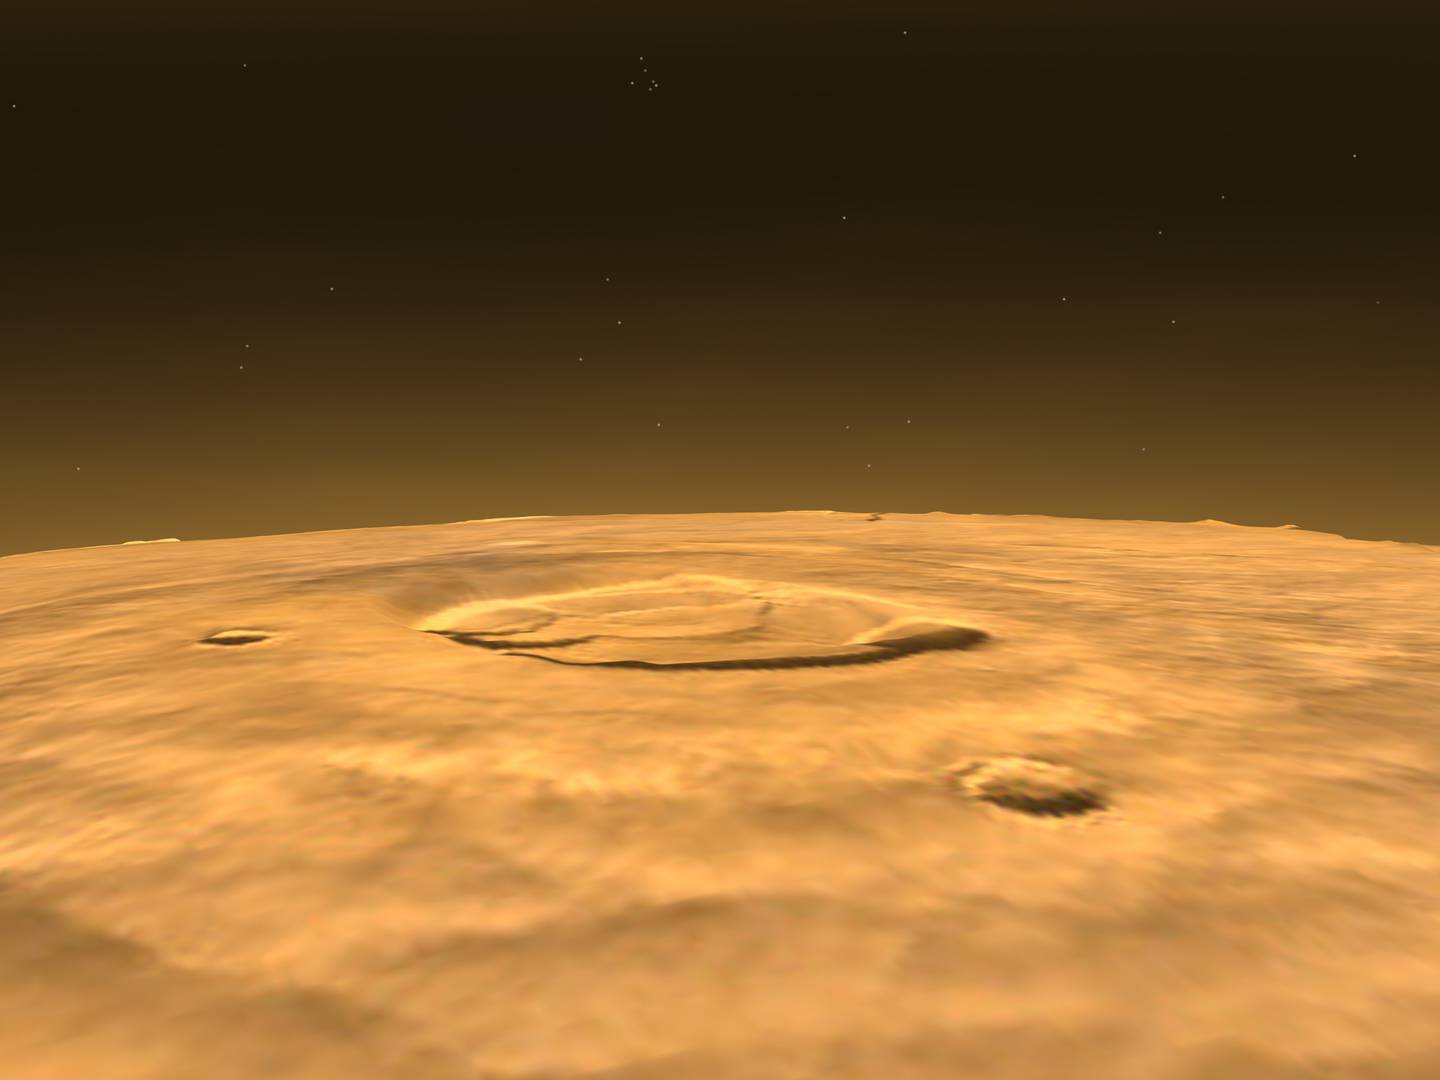 NASA captura una imagen inédita del Monte Olimpo en Marte, ofreciendo datos únicos sobre la atmósfera del planeta rojo.